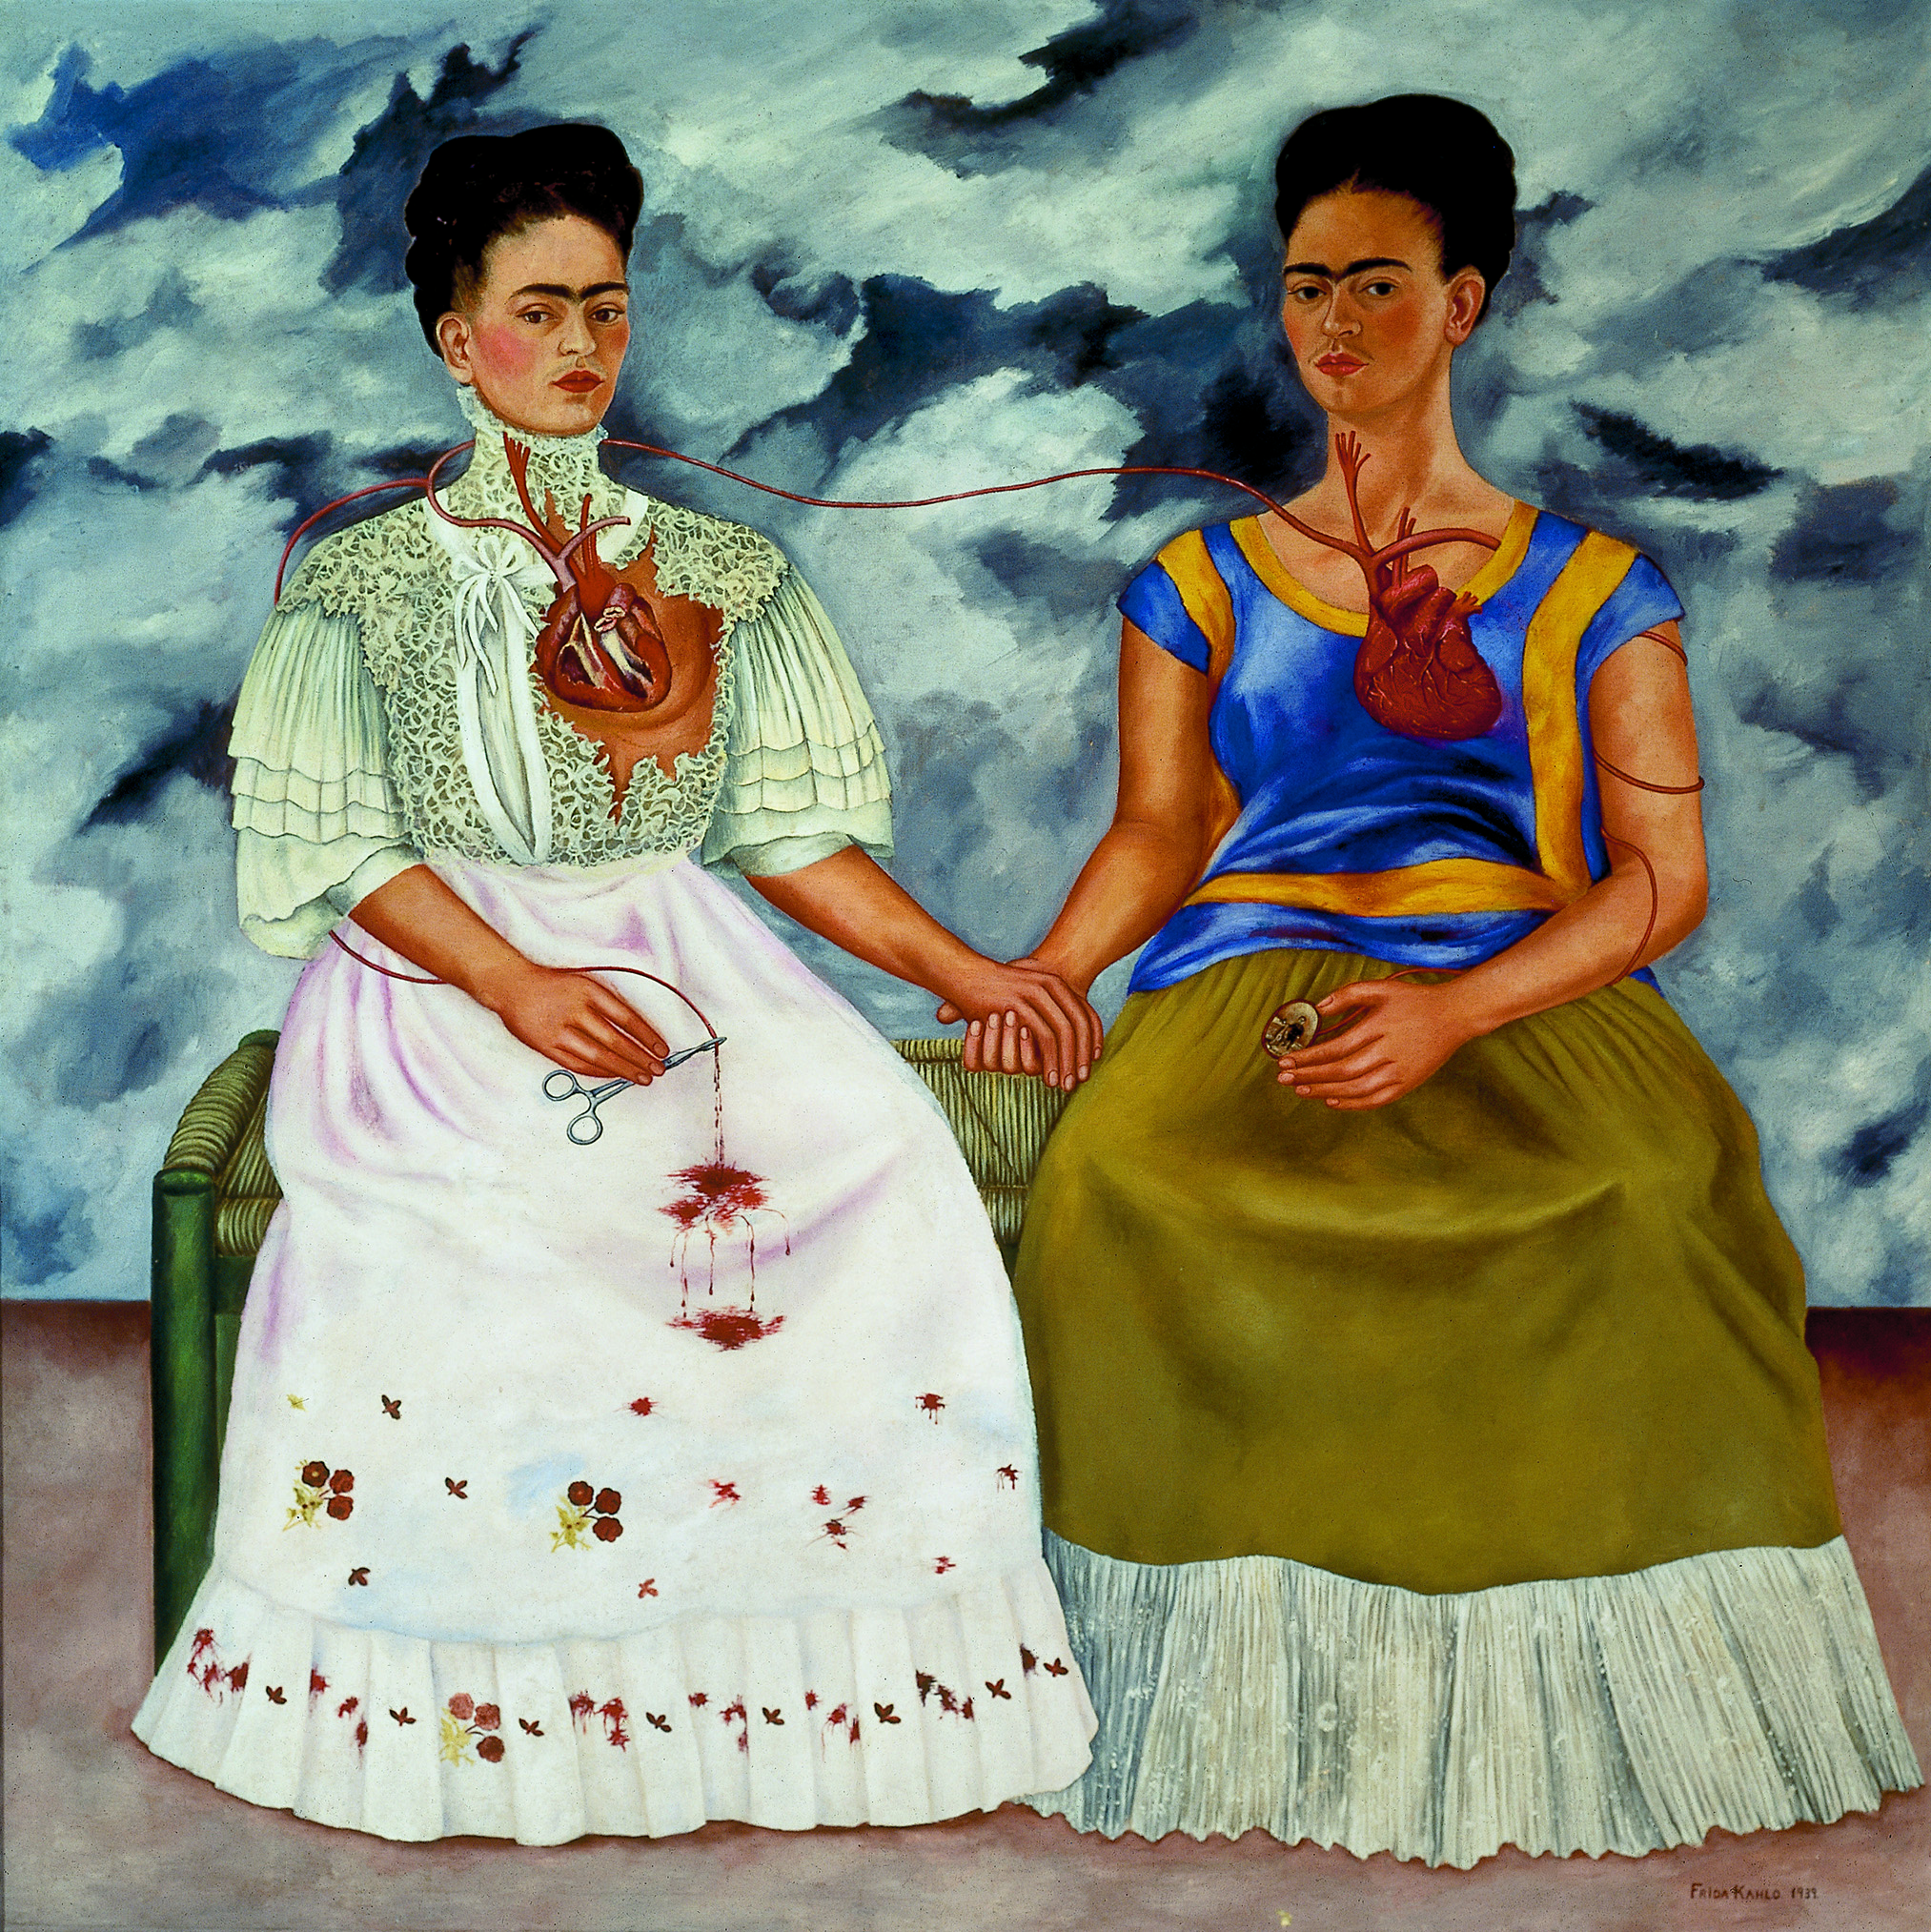 Las dos Fridas, cuadro de Frida Kahlo, cumple 80 años con presentación en  el Museo de Arte Moderno | Prensa INBA - Instituto Nacional de Bellas Artes  | Artes Visuales